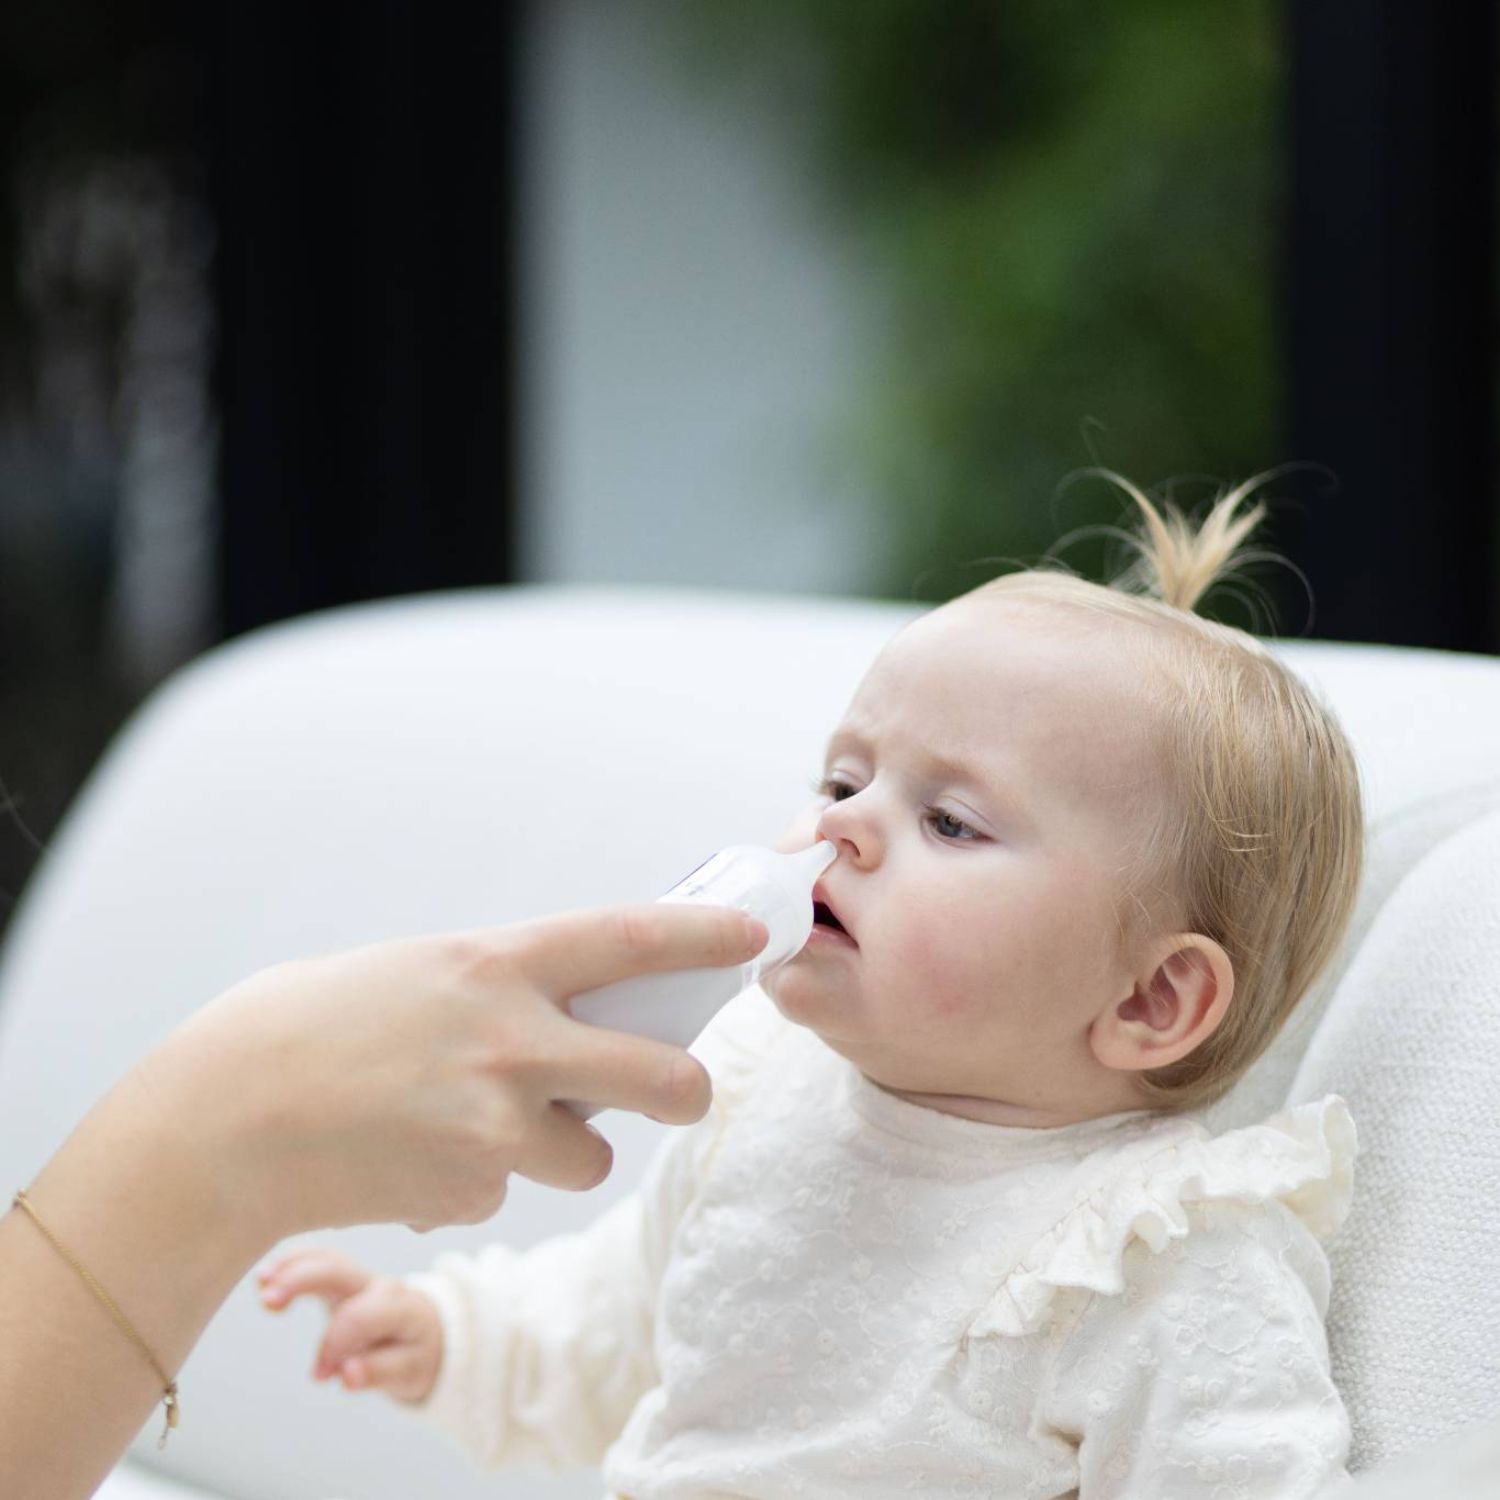 Neusreiniger voor baby's vanaf 0 maanden, verschillende standen te verstellen. De Youha baby neusreiniger maakt reinigen makkelijk en veilig. 